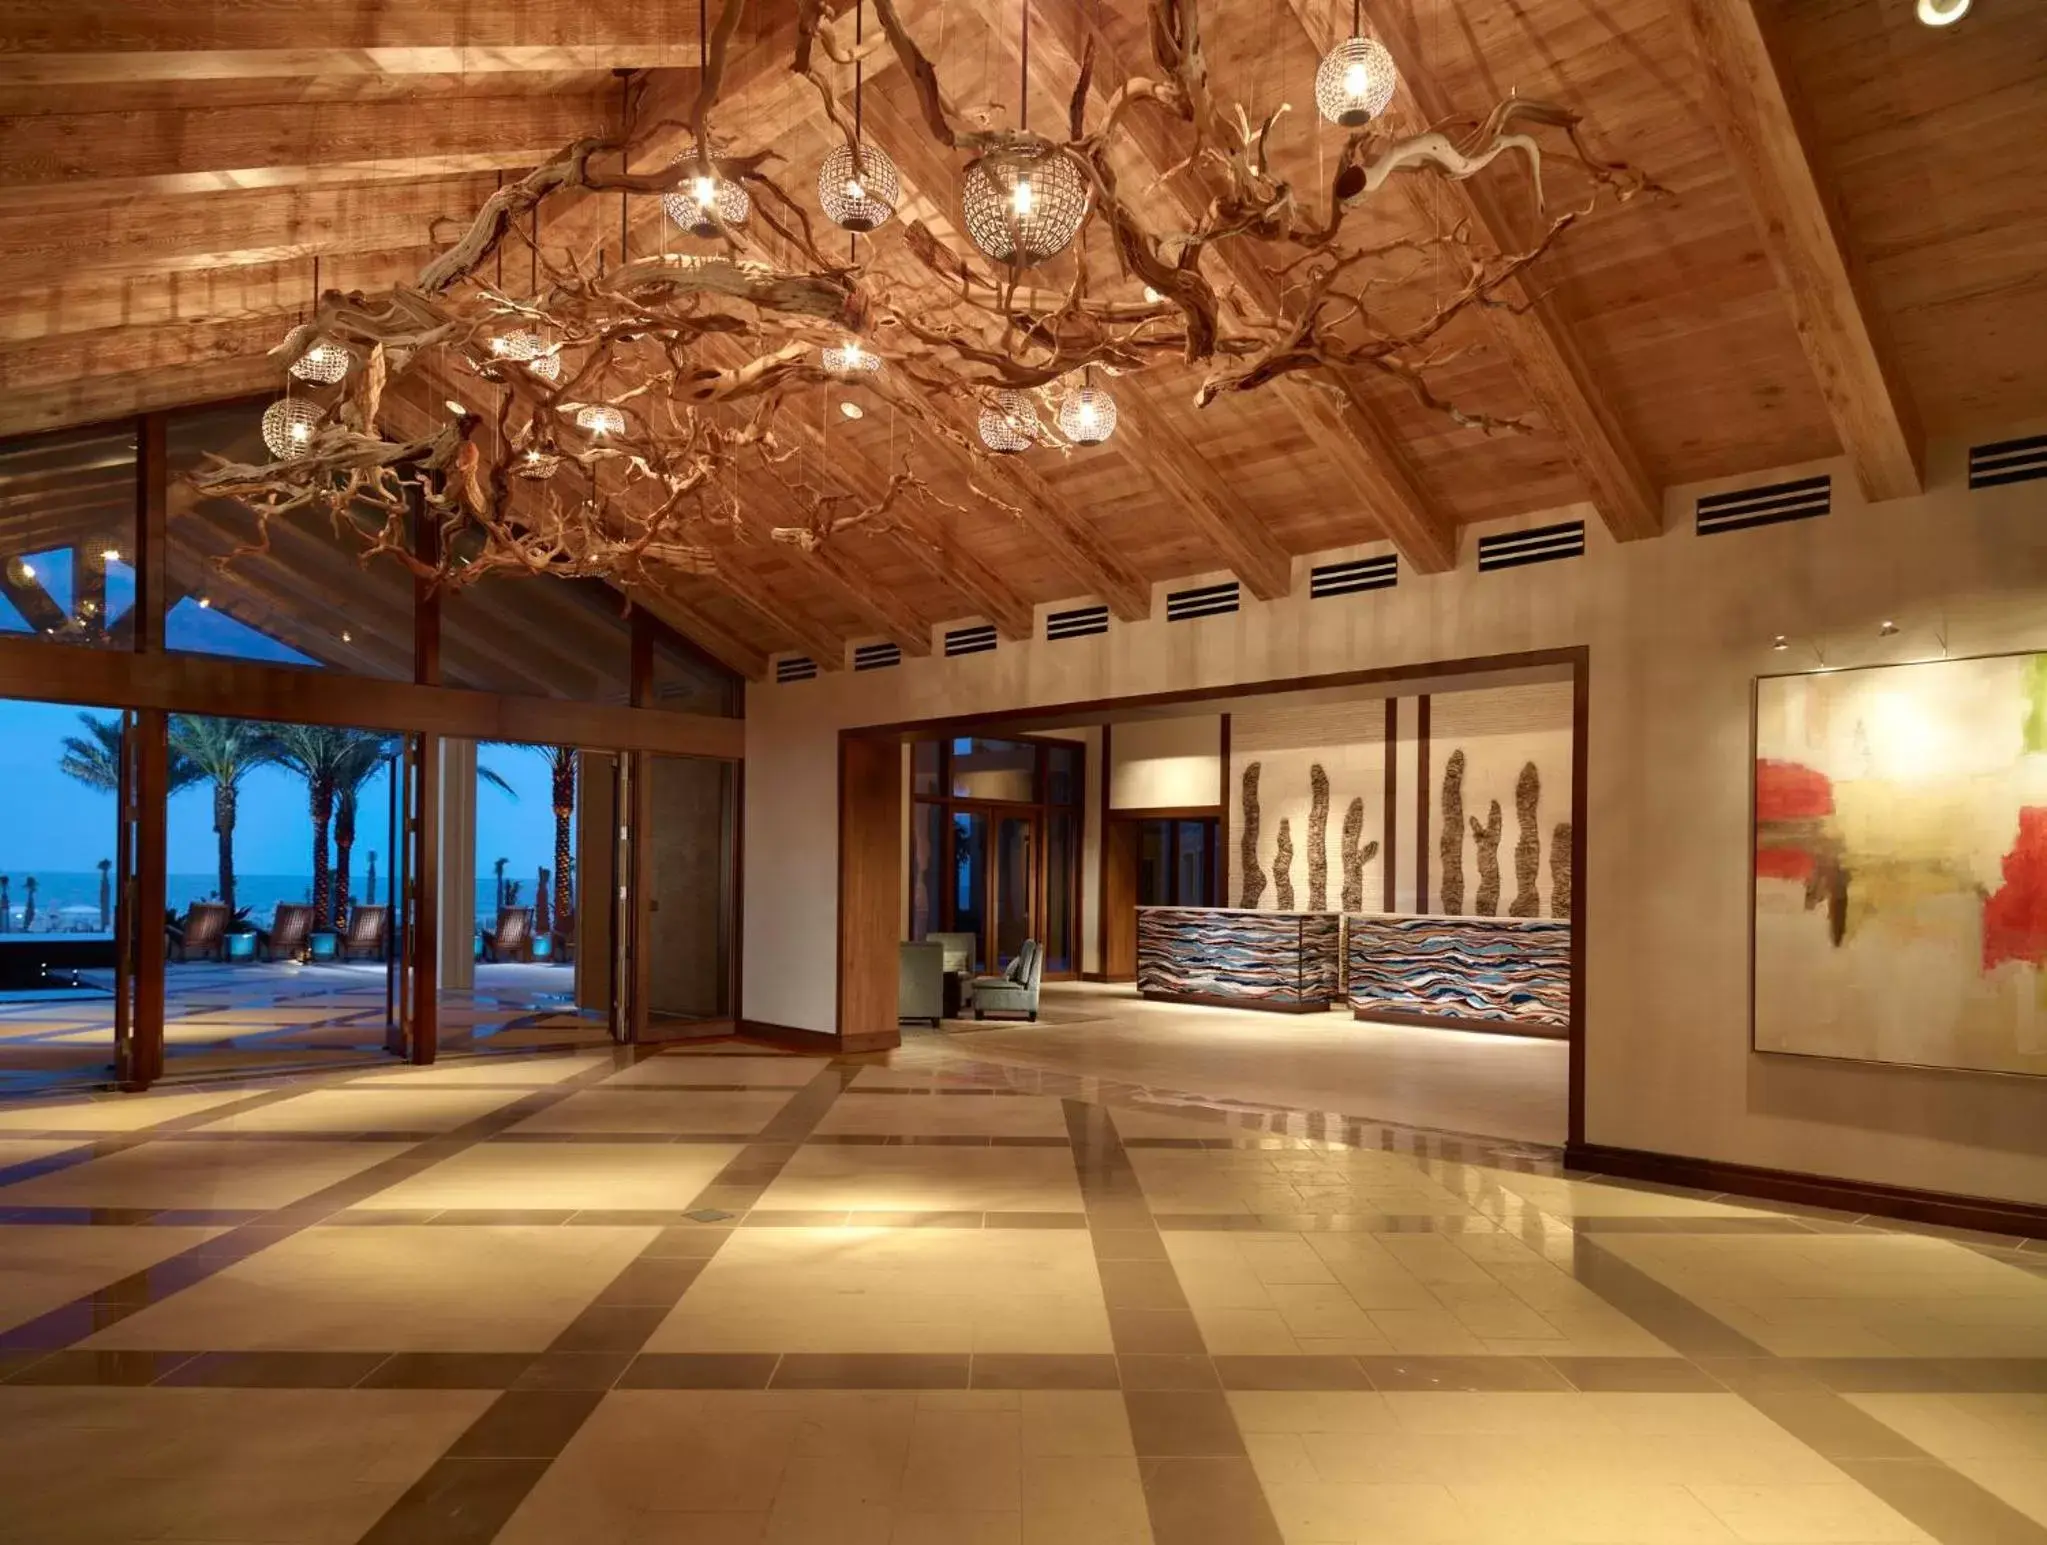 Lobby or reception, Lobby/Reception in Omni Amelia Island Resort